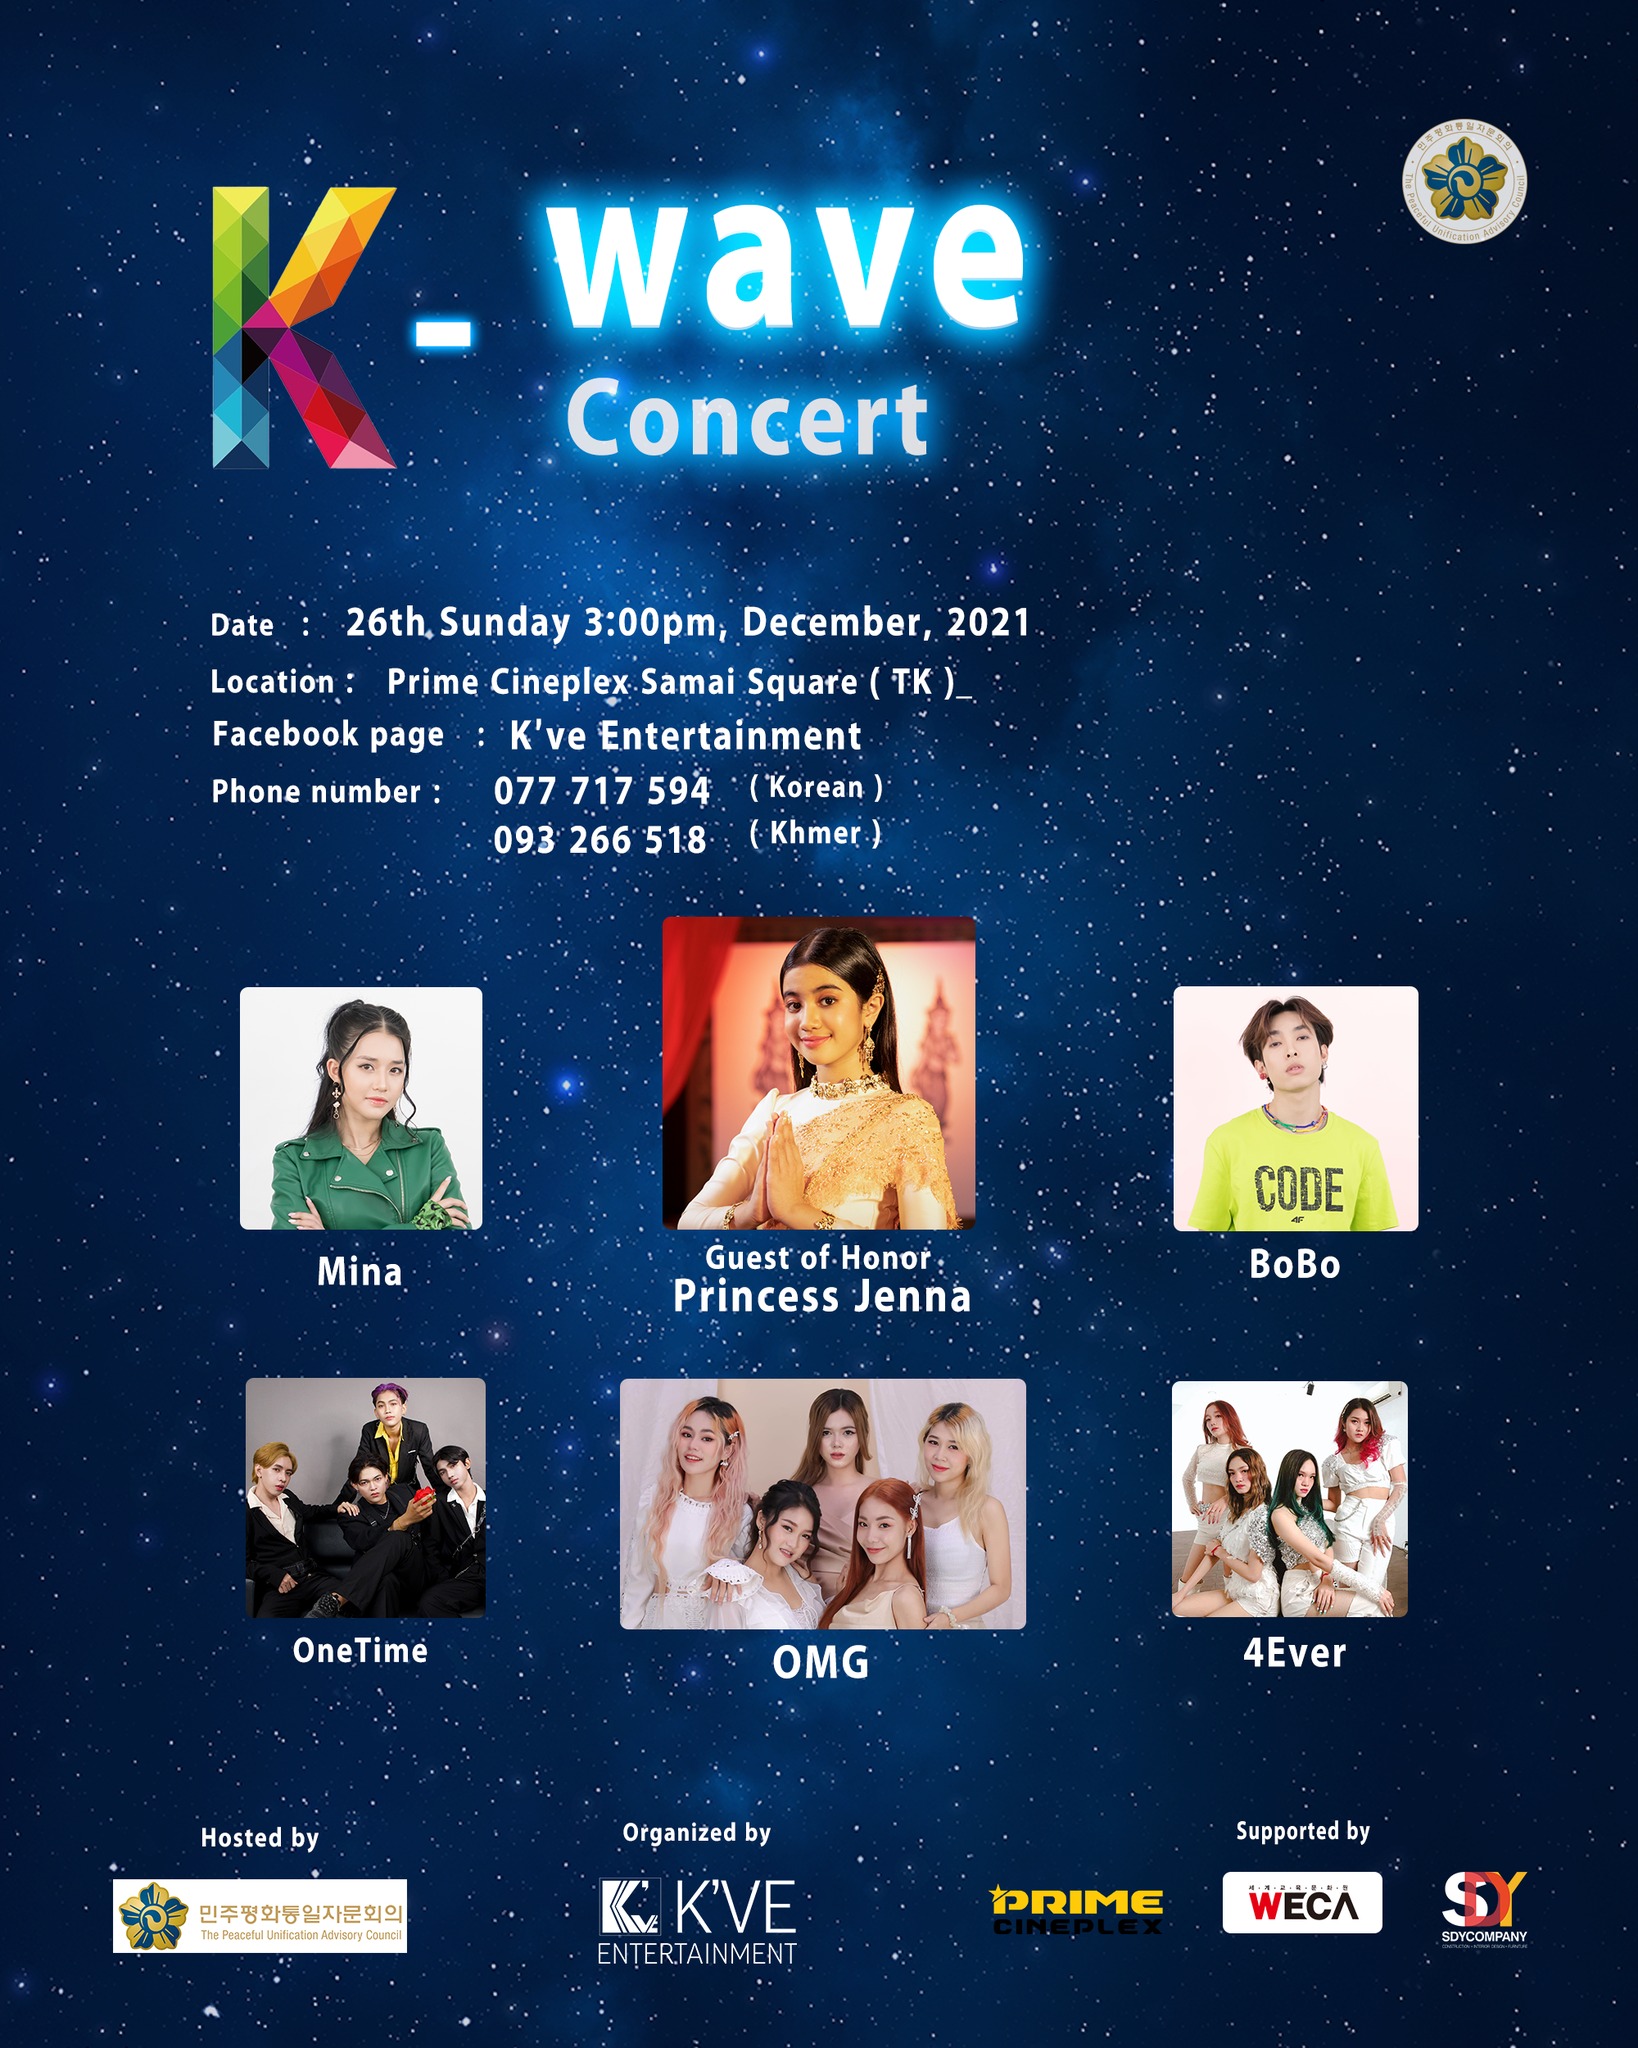 민주평통캄보디아지회·케이브 엔터테이먼트, ‘KWave’ 콘서트 12월 26일 개최 뉴스브리핑캄보디아